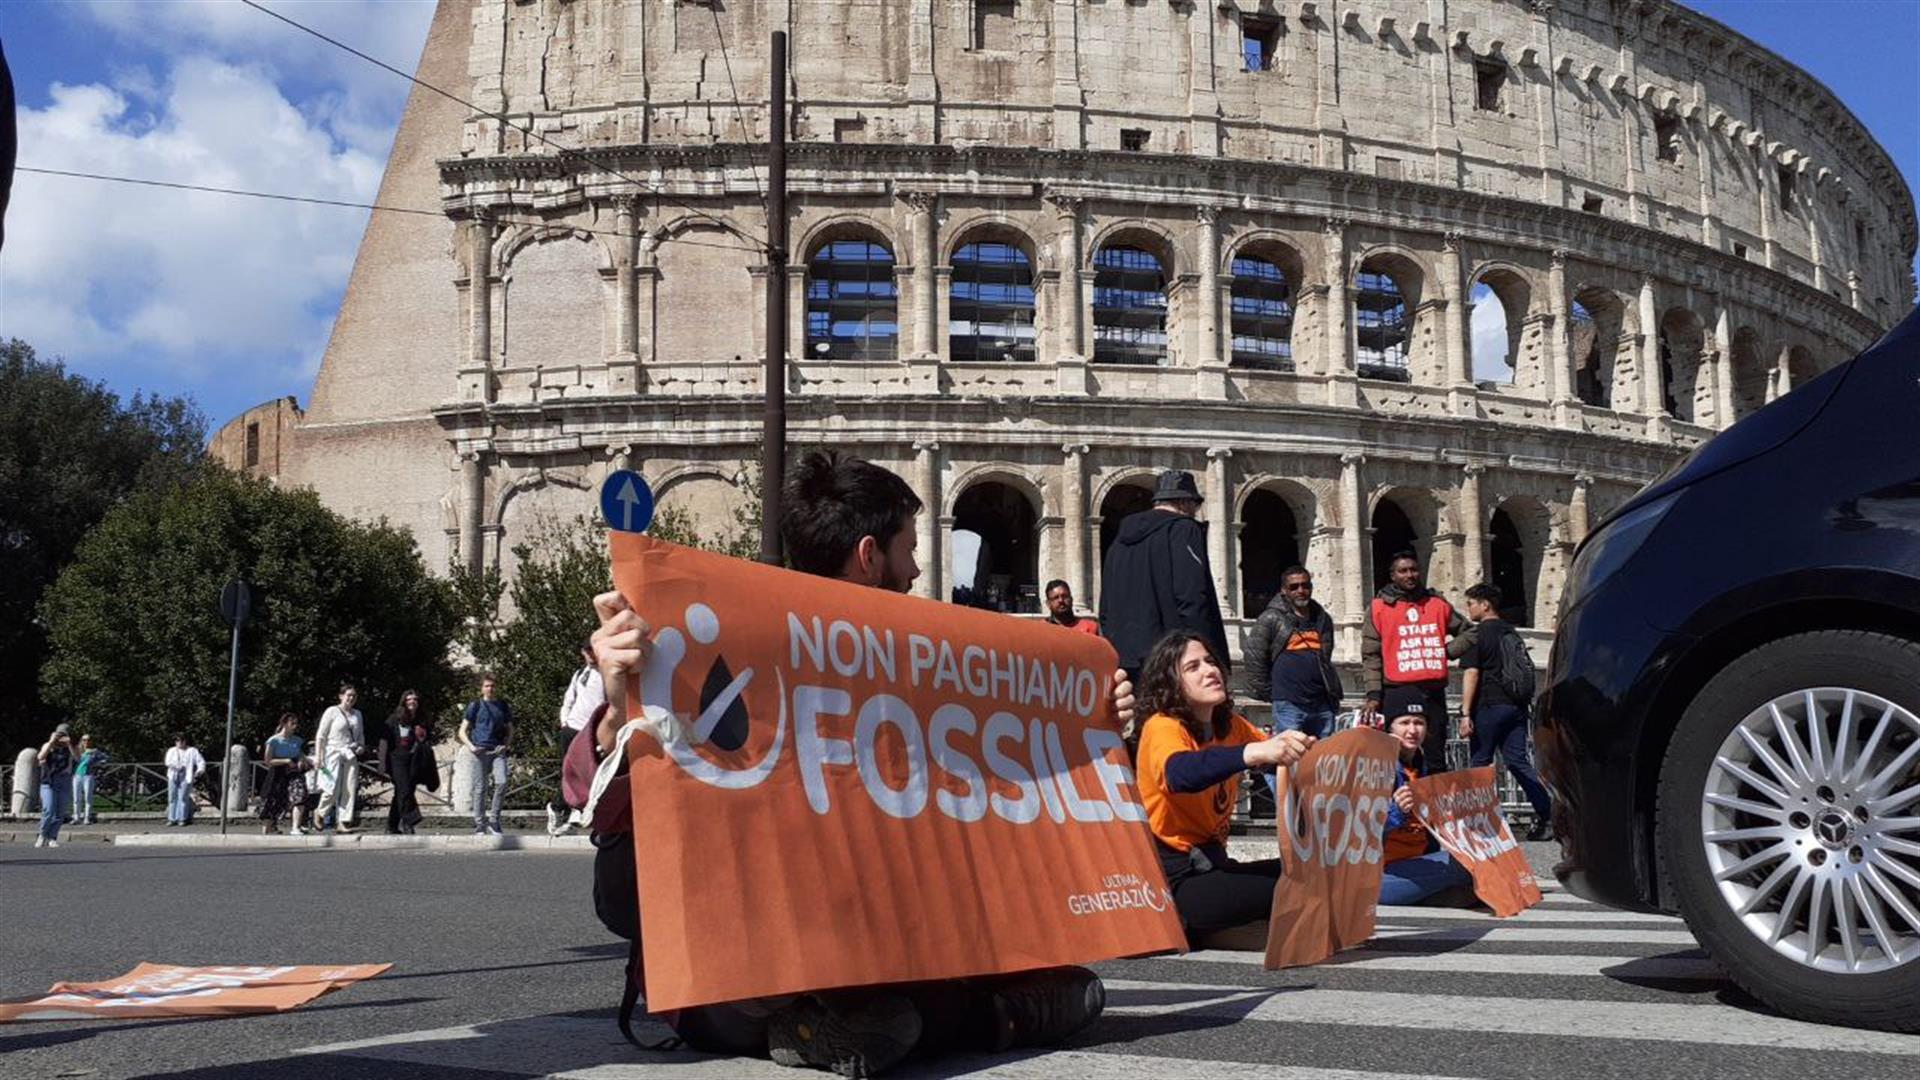 Ultima generazione_non paghiamo fossile blocco Roma